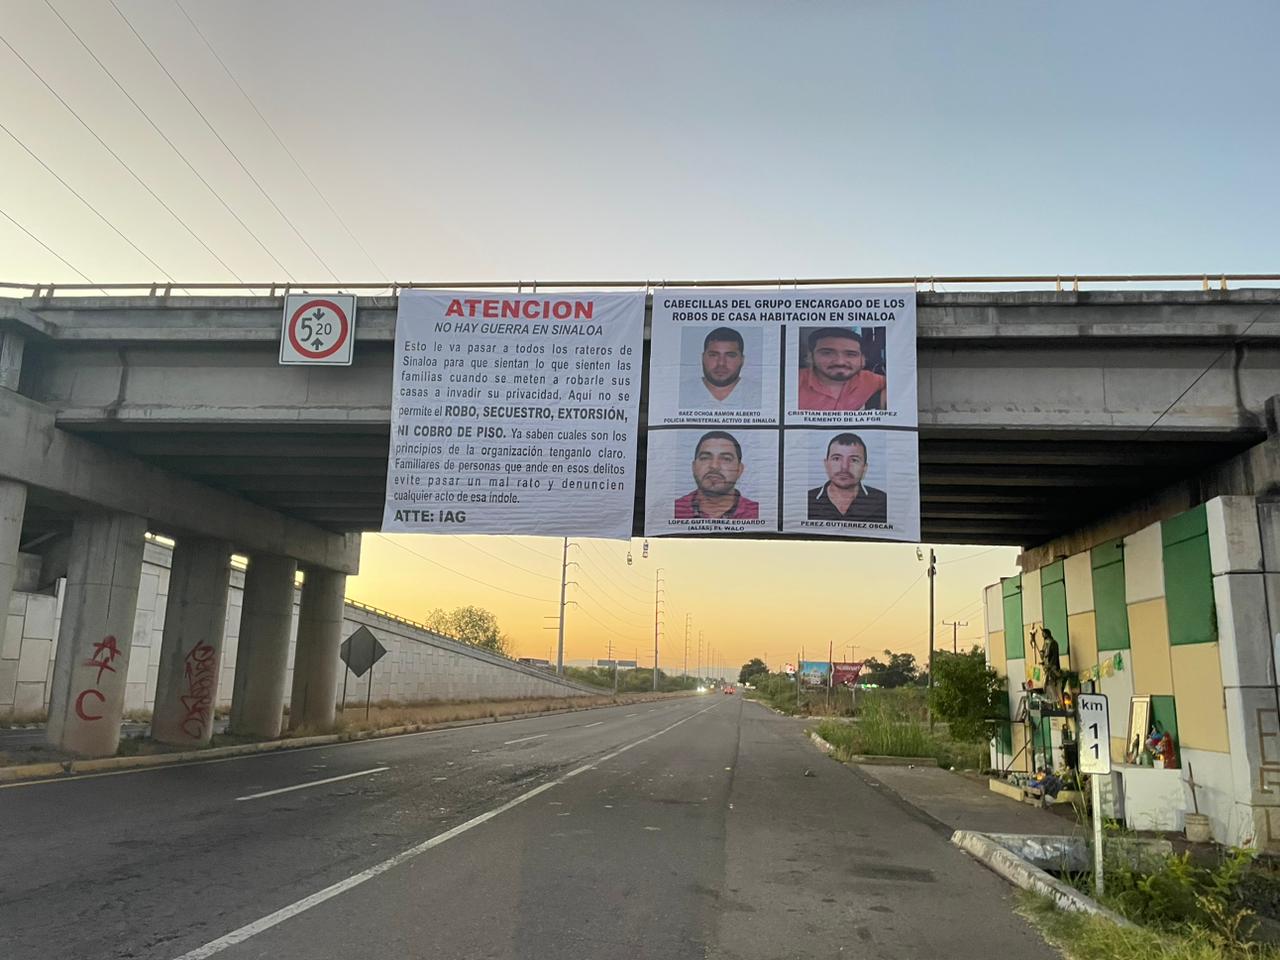 Aparecen mensajes contra rateros, secuestradores y extorsionadores en Sinaloa